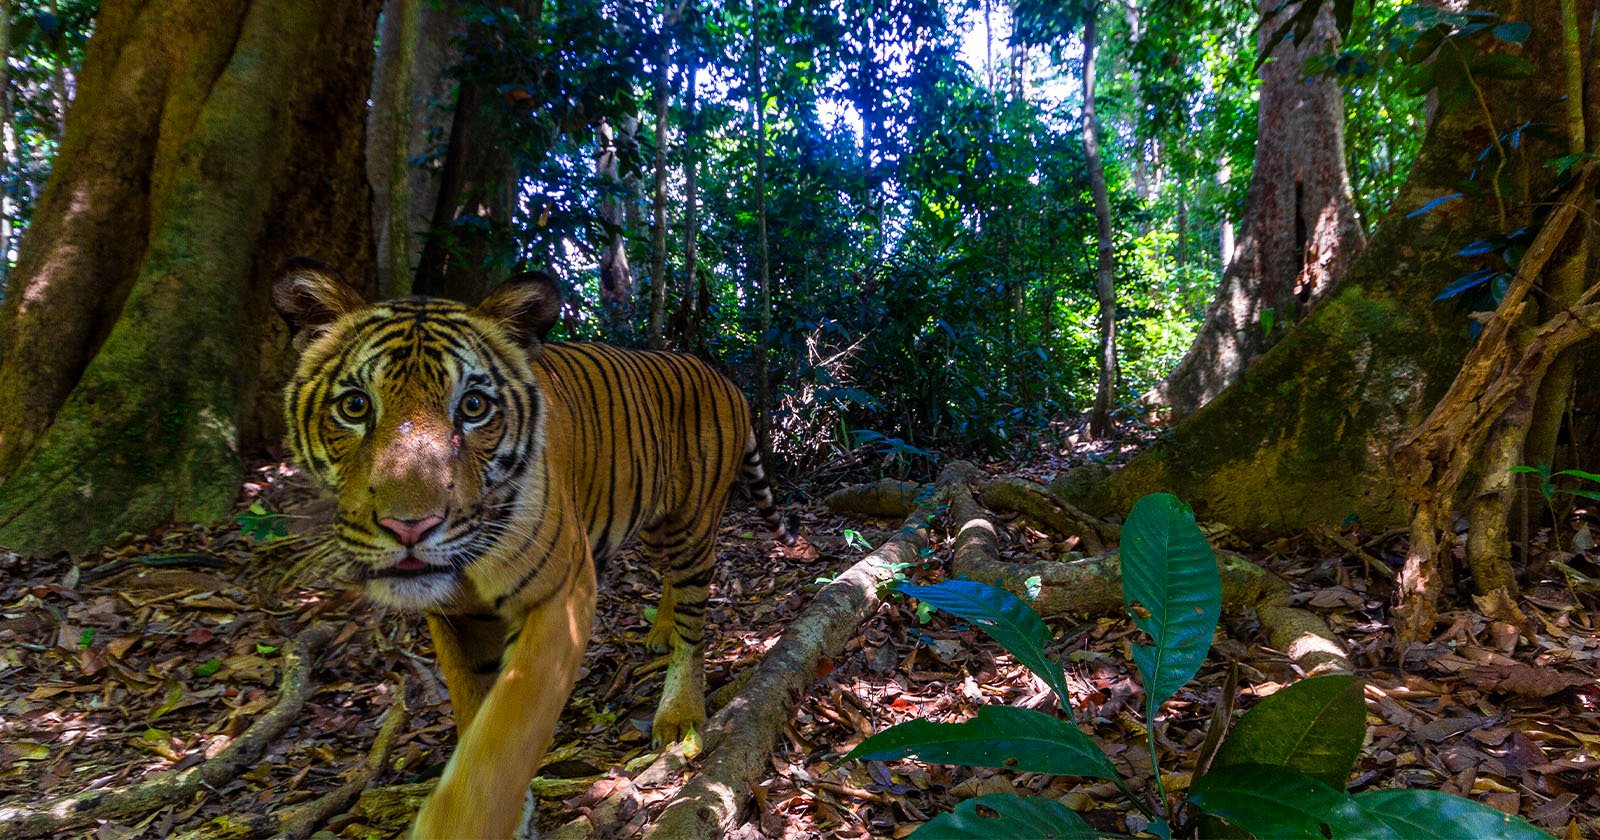 Camera Trap Captures Rare Photos of Critically Endangered Malayan Tiger